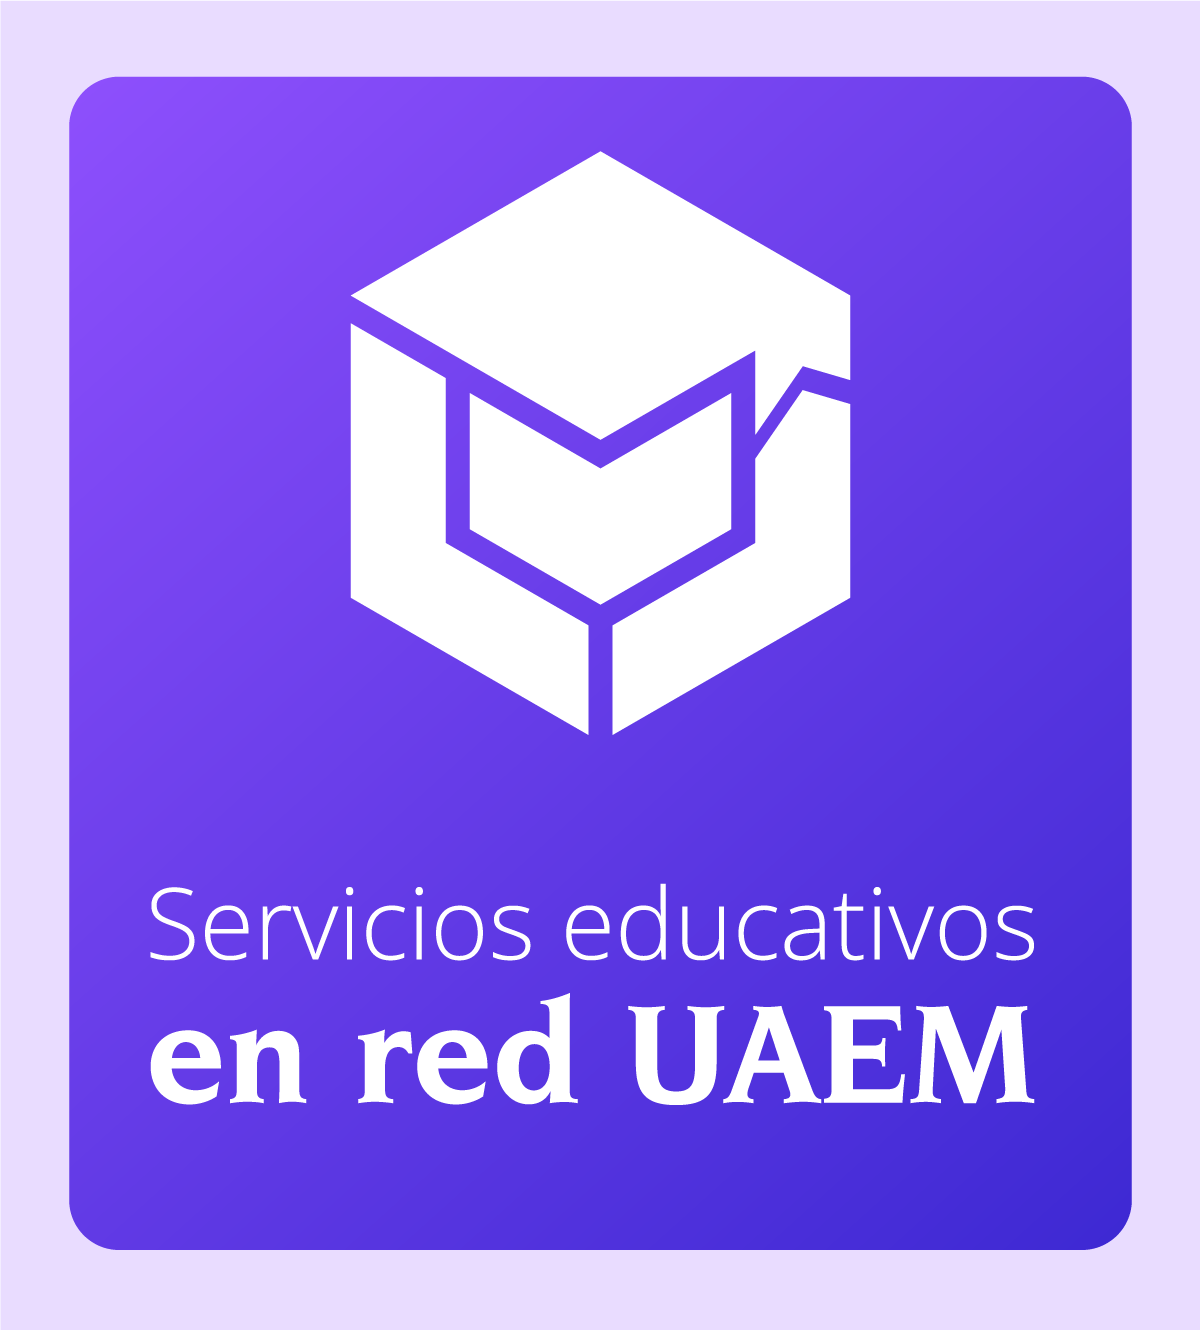 UAEM - Universidad Autónoma del Estado de Morelos